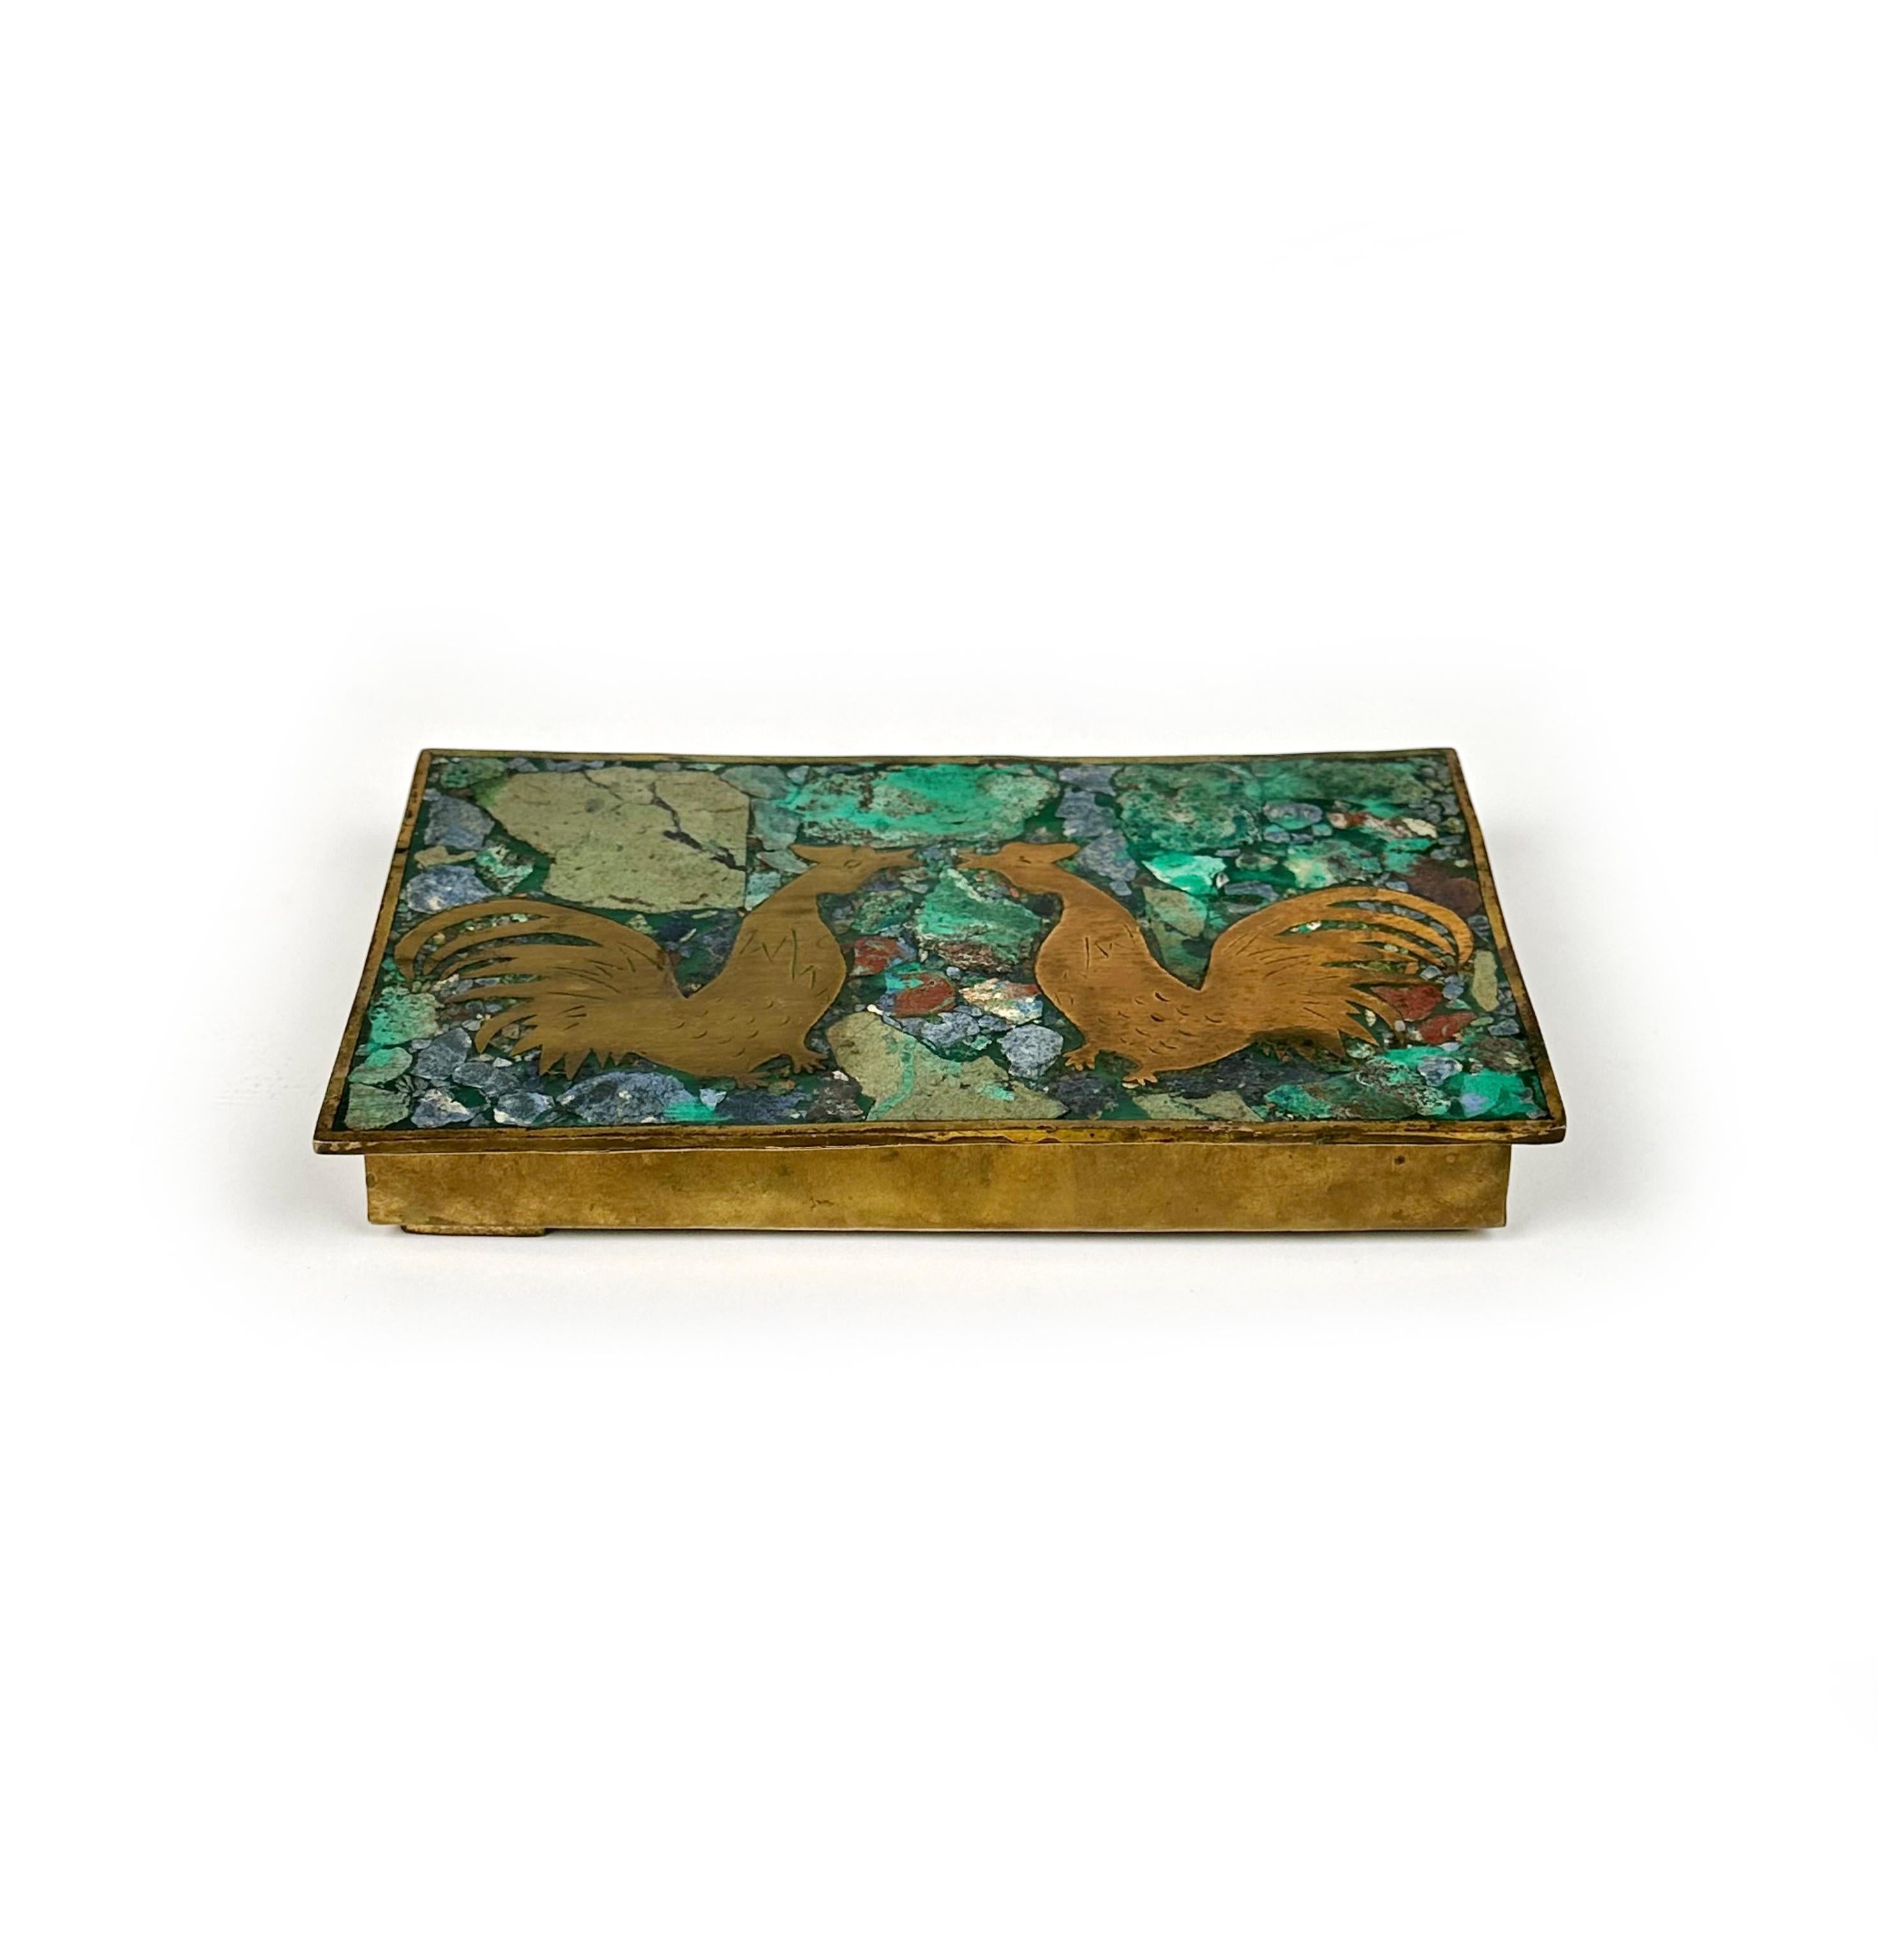 Bellissima scatola in ottone con intarsio di malachite e sodalite (o lapislazzuli) con cerniera e interno in Wood. 

Due galli decorano il coperchio. Negli anni '60 i fabbri di Taxco, in Messico, erano noti per la produzione di questo tipo di